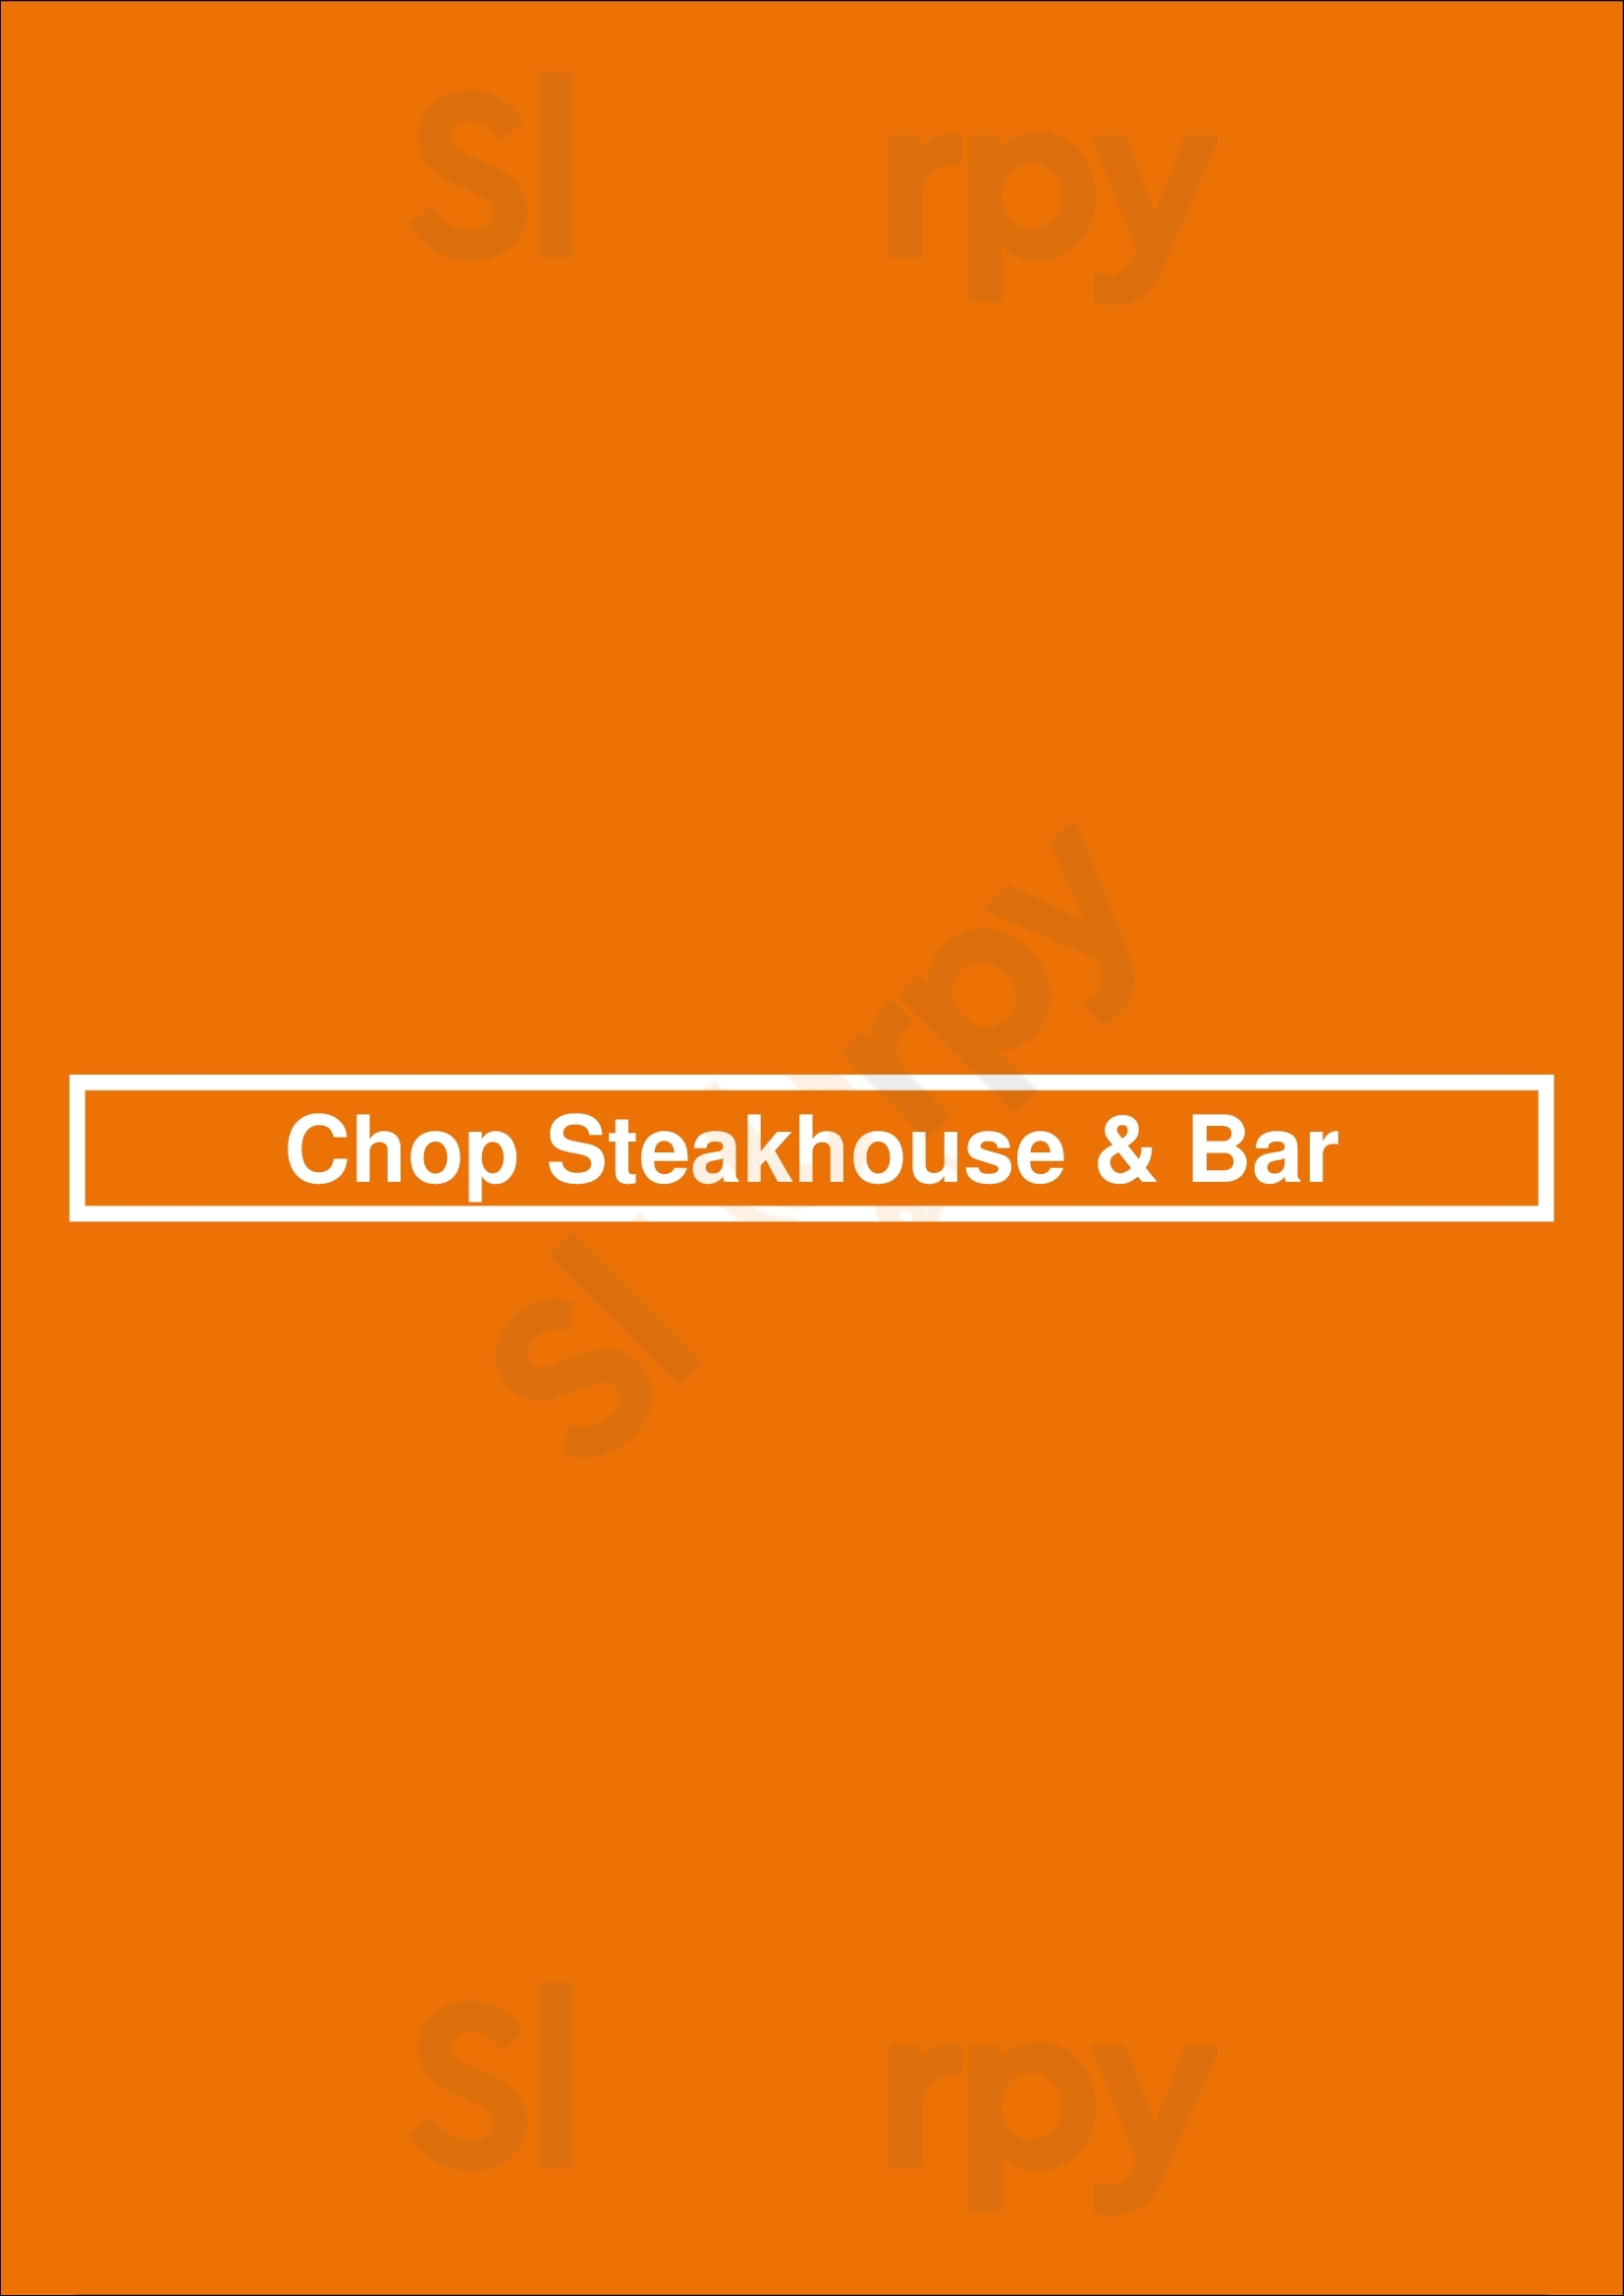 Chop Steakhouse & Bar Winnipeg Menu - 1